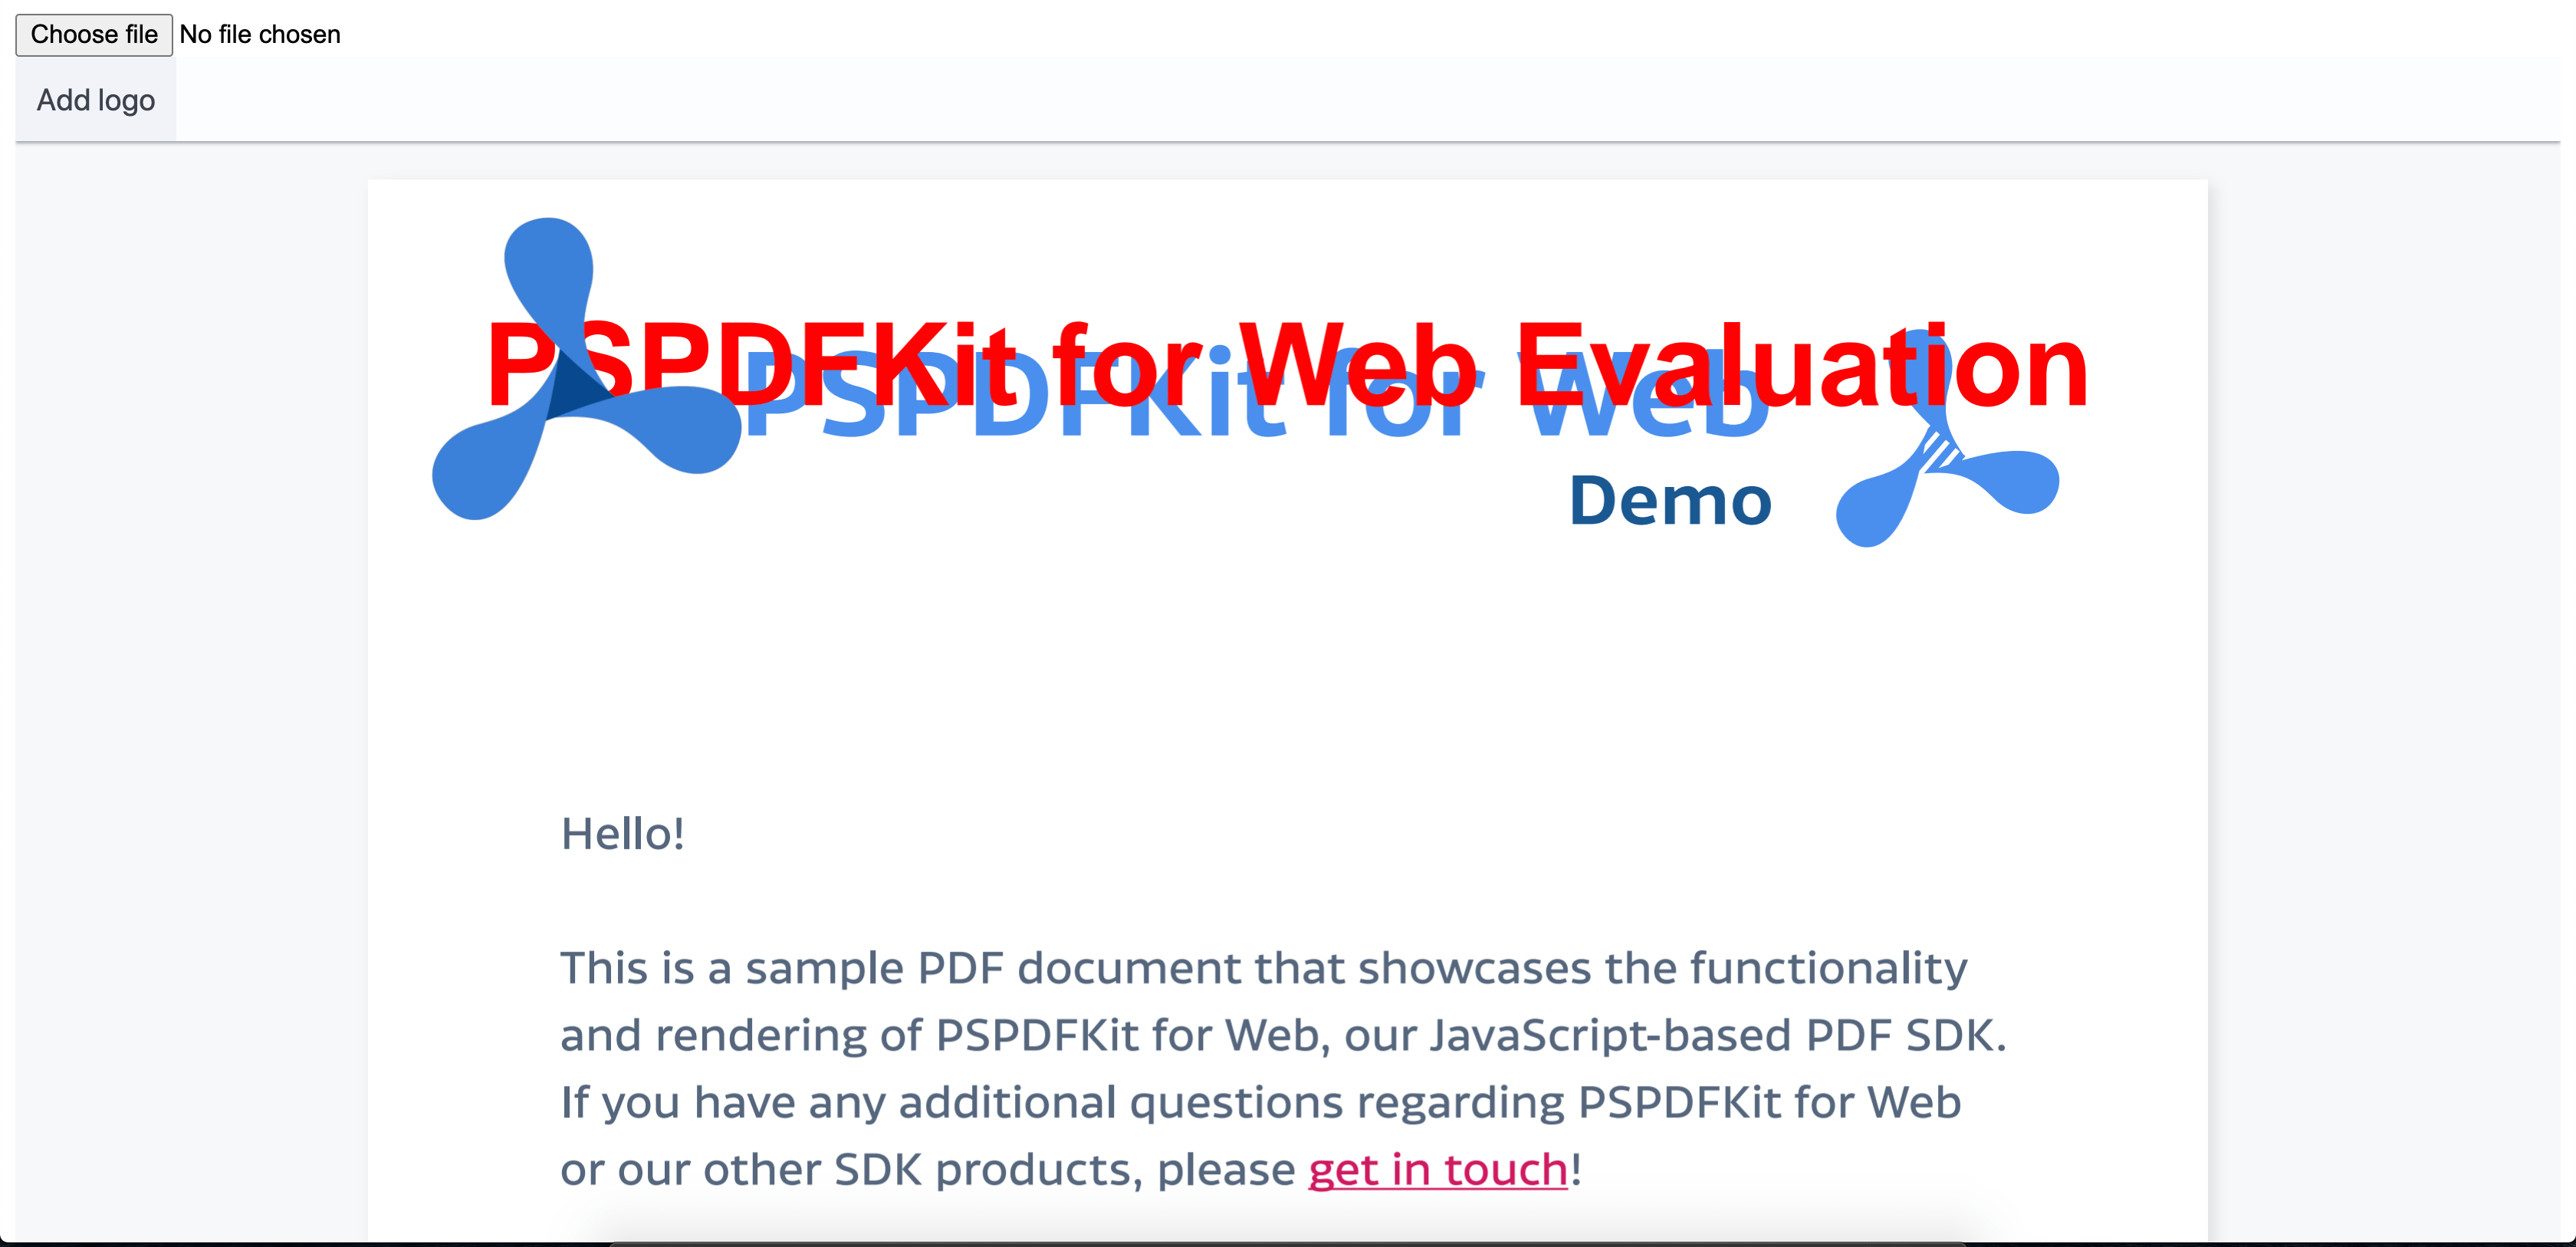 PDF with logo